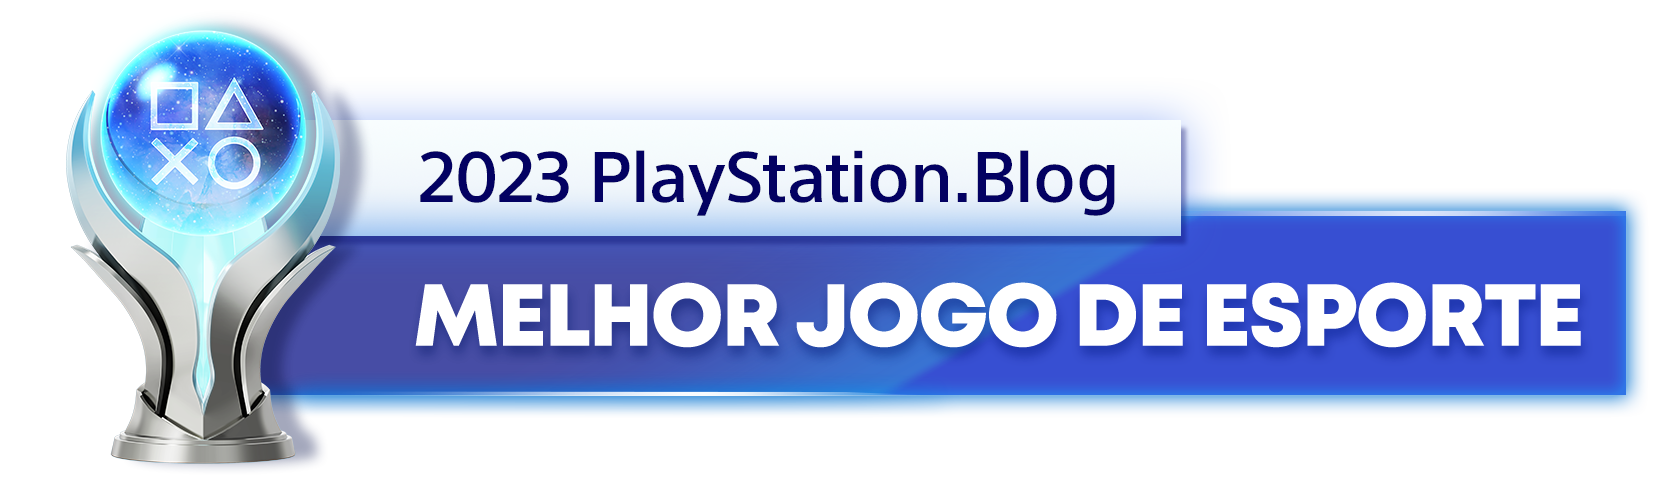  "Troféu de Platina para o vencedor da categoria Melhor Jogo de Esporte de 2023 do PlayStation Blog "